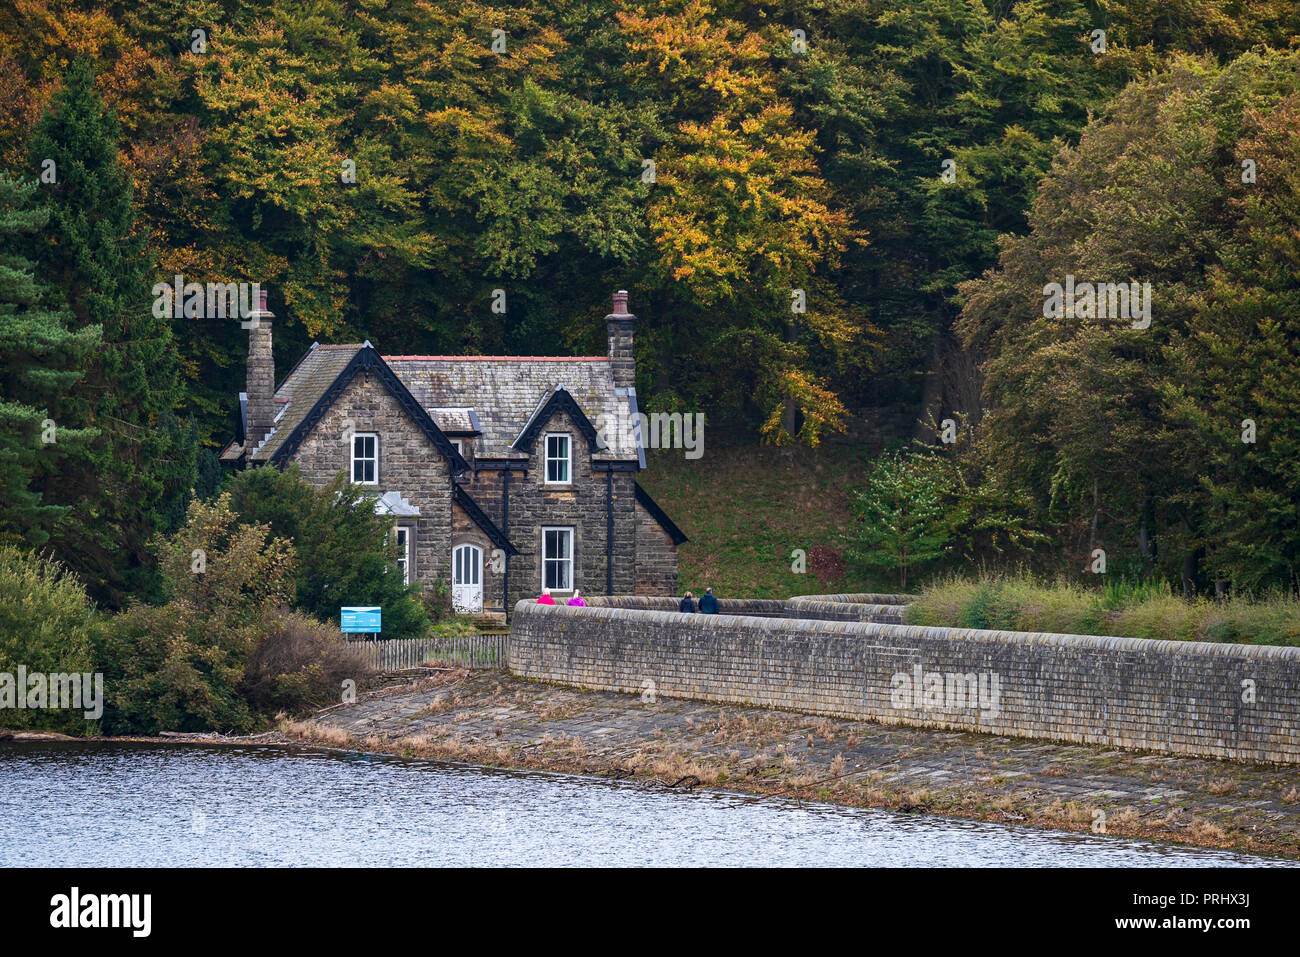 Maison en pierre au bord du bois, par un mur en terre et sur les rives du lac - Réservoir d'Fewston, Washburn Valley, North Yorkshire, Angleterre, Royaume-Uni. Banque D'Images